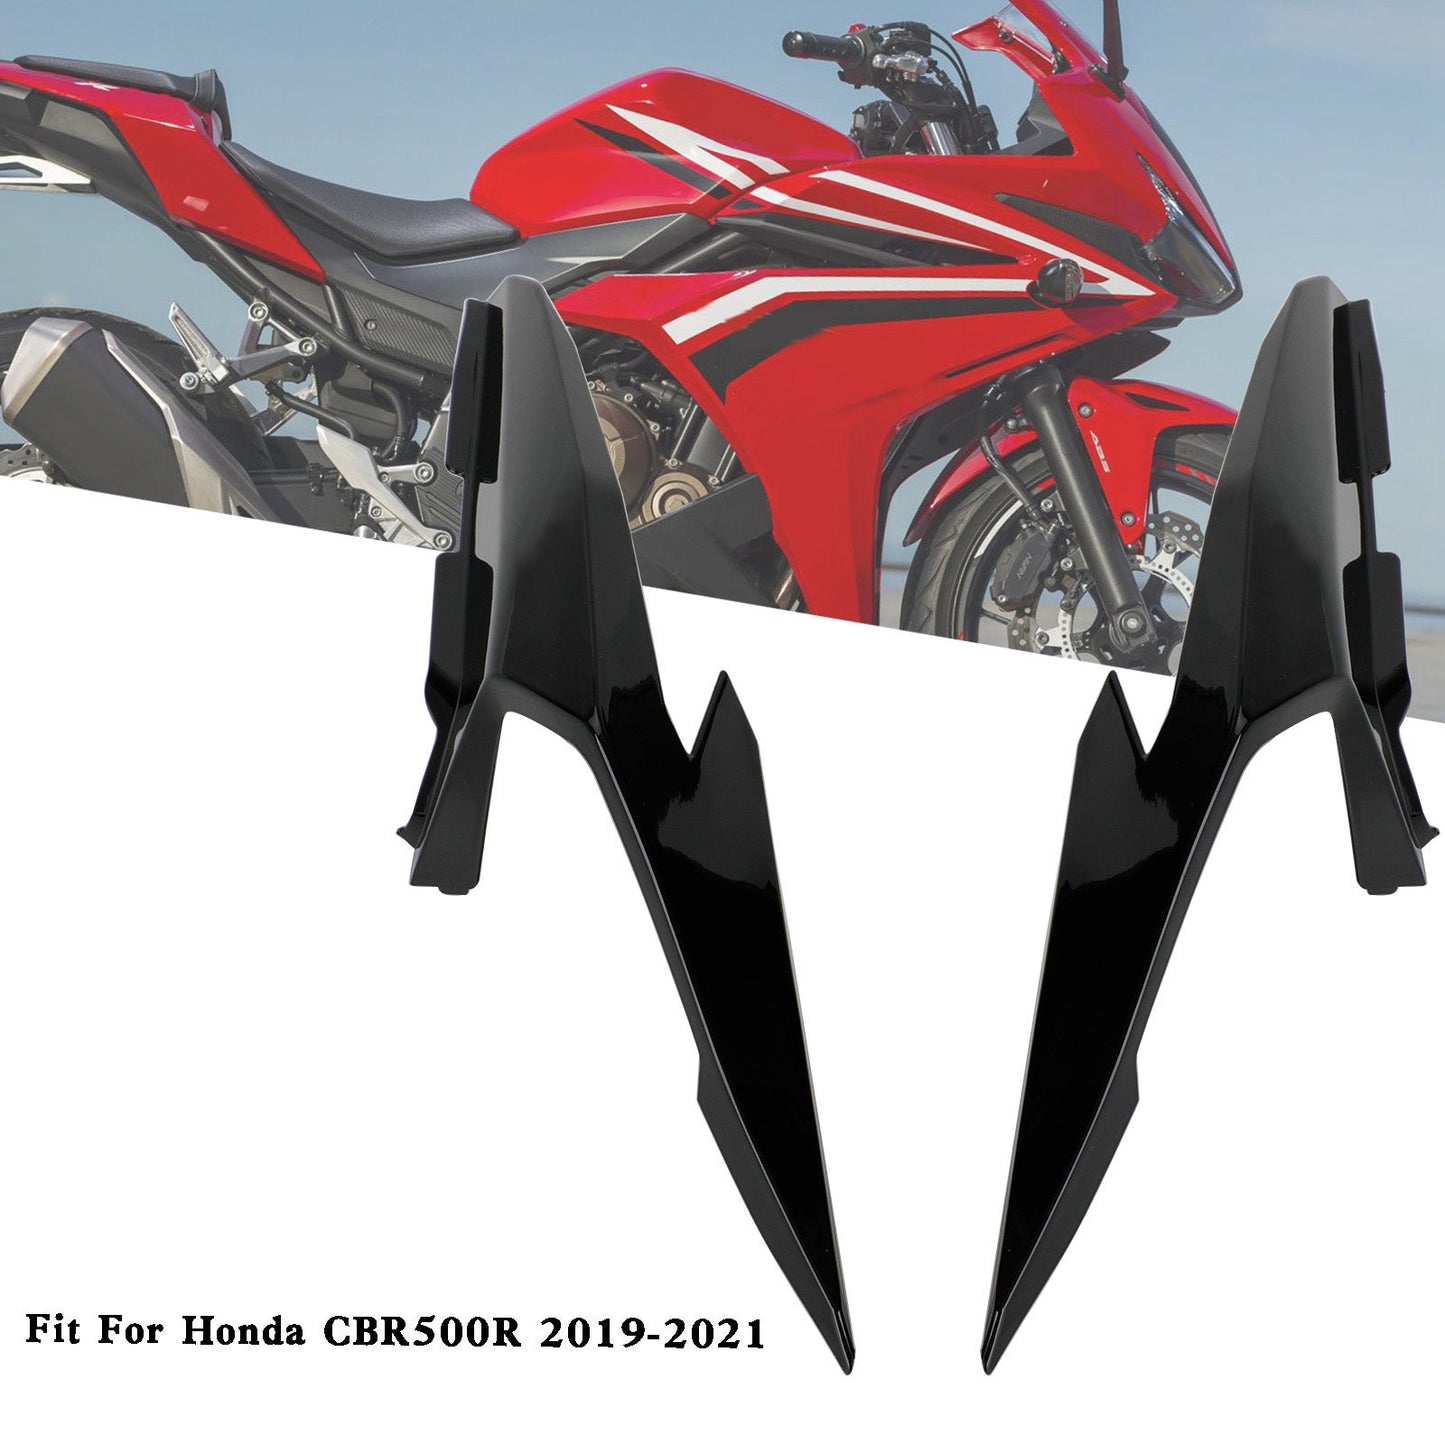 Rear Upper Tail Side Cover Fairing Cowl For Honda CBR500R 2019-2021 Black